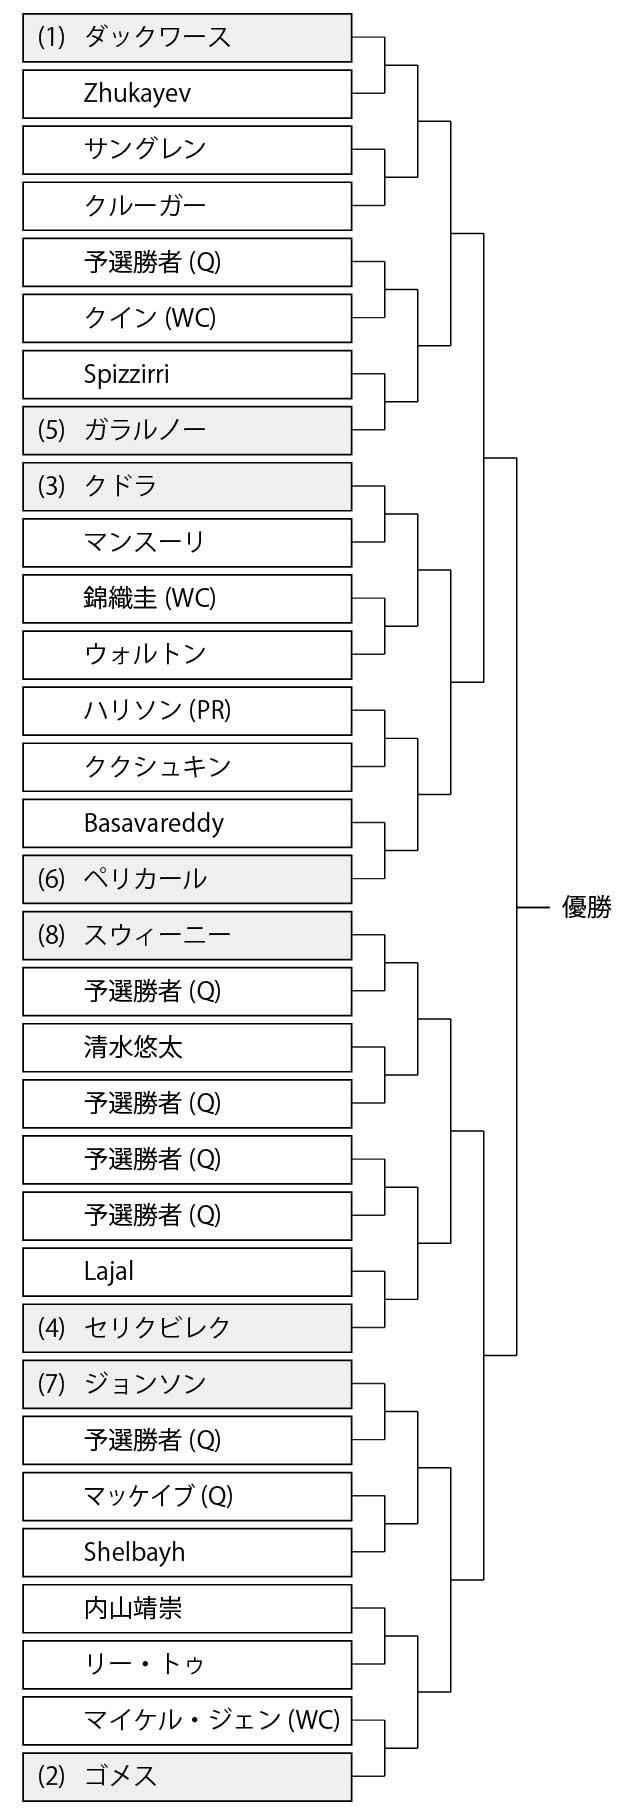 クランブルック・テニス・クラシック2023 男子シングルスのドロー(トーナメント表)